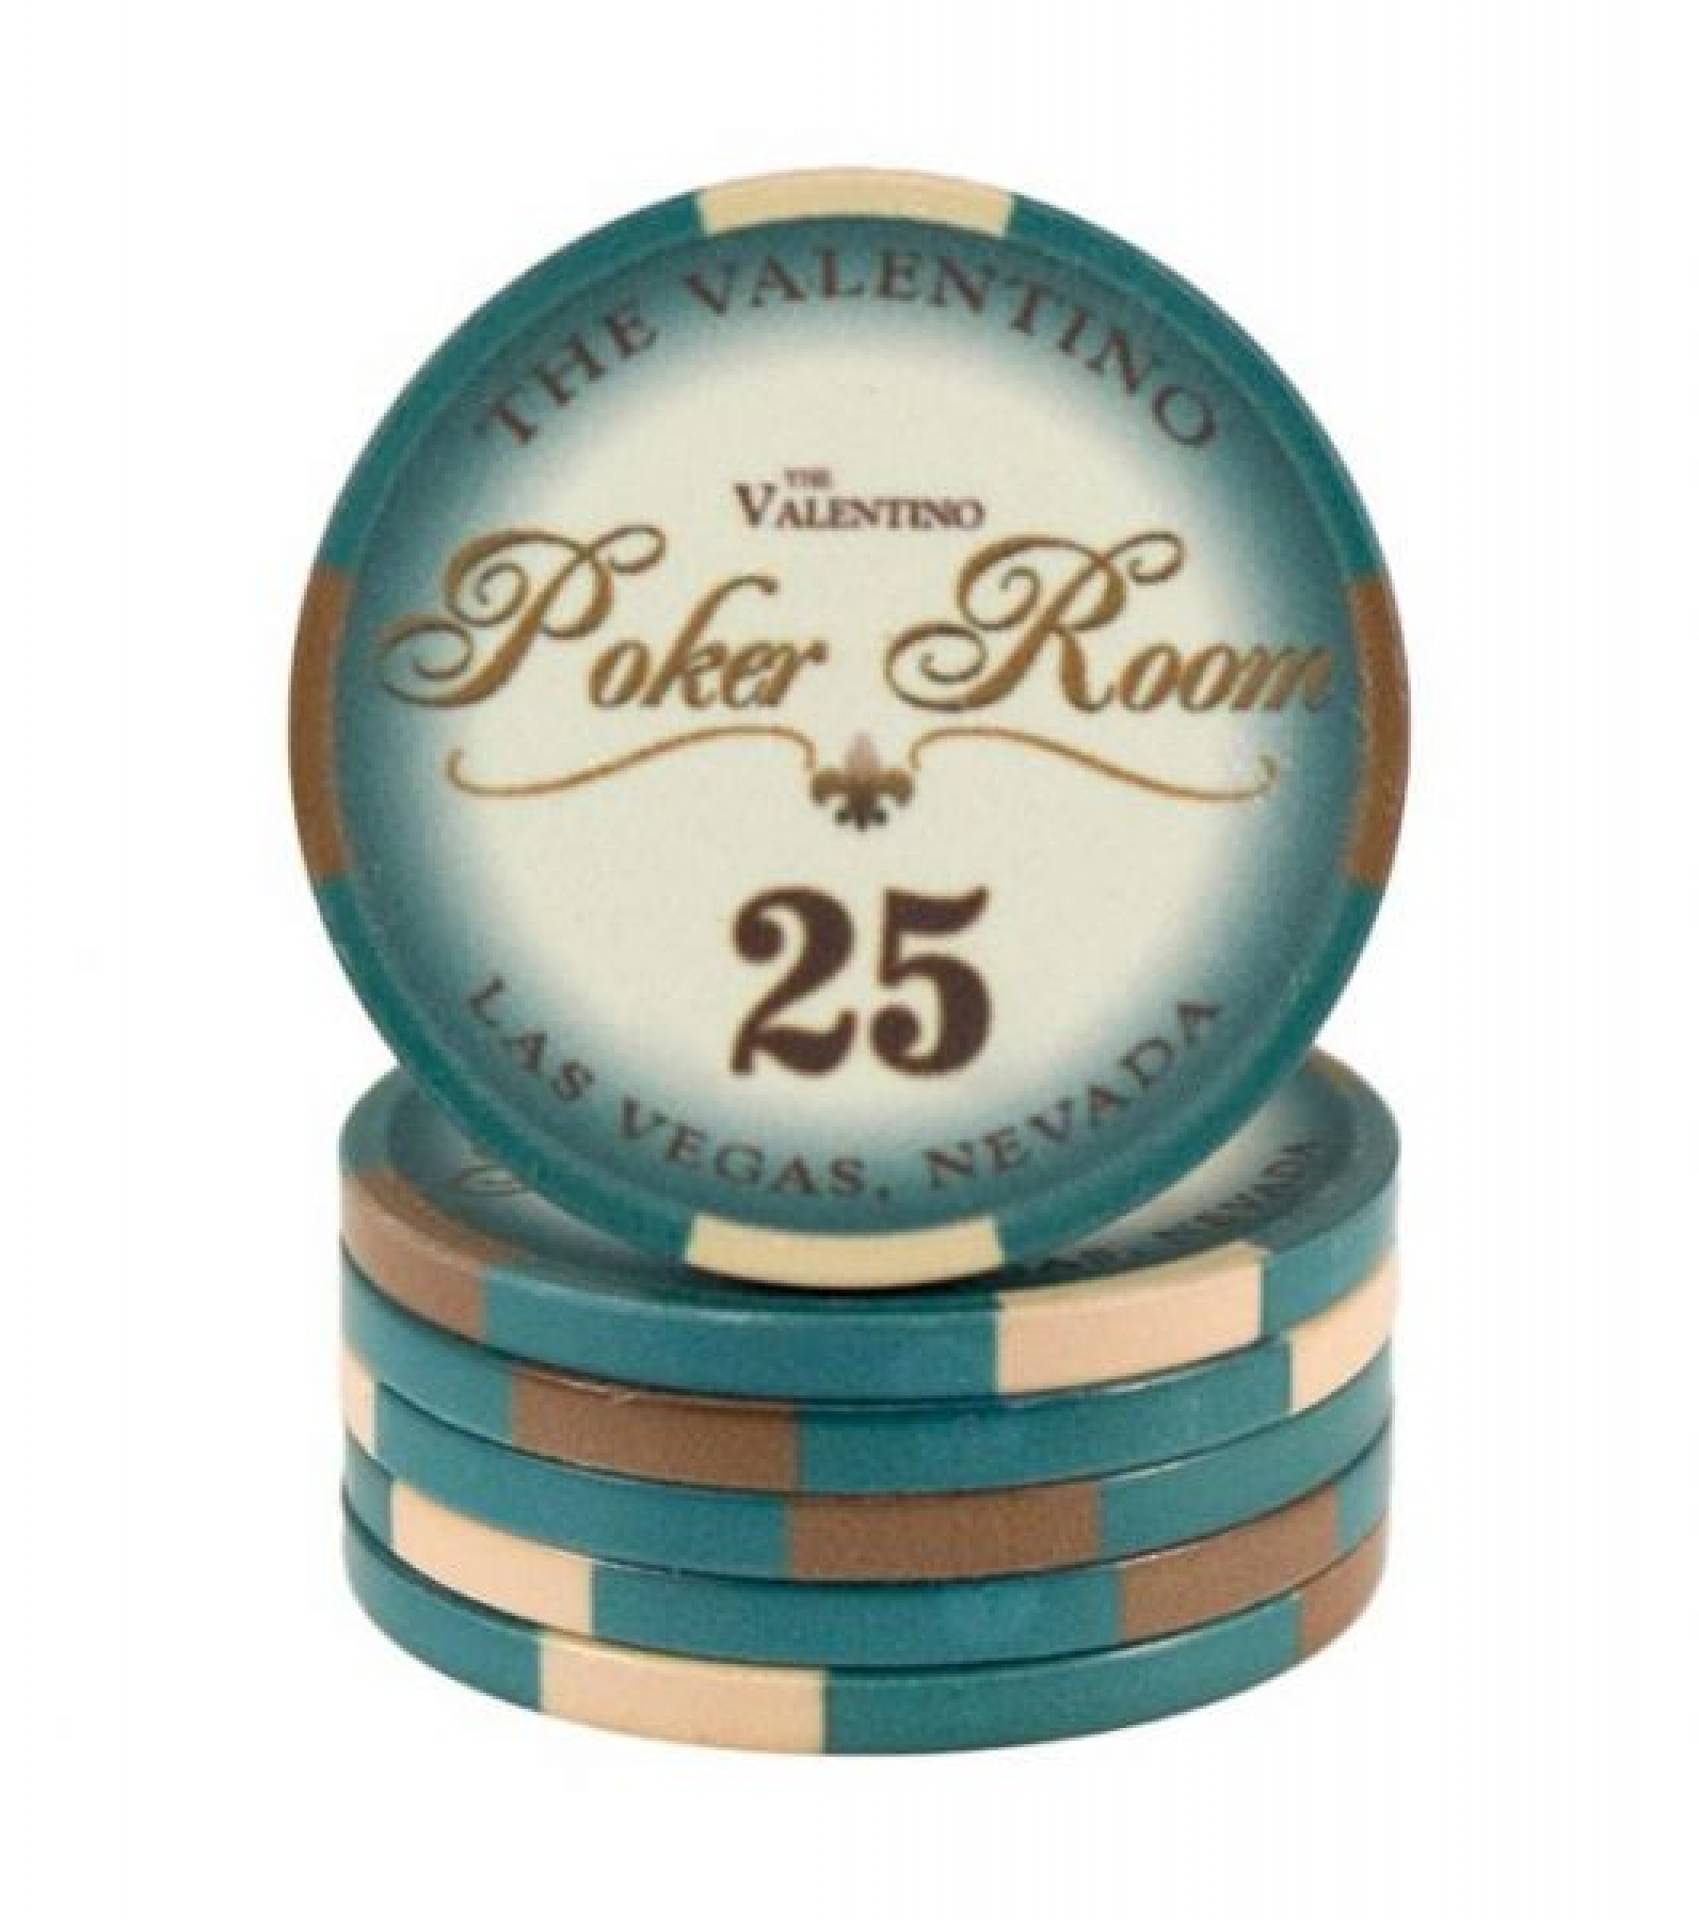 Poker chip Valentino - hodnota 25